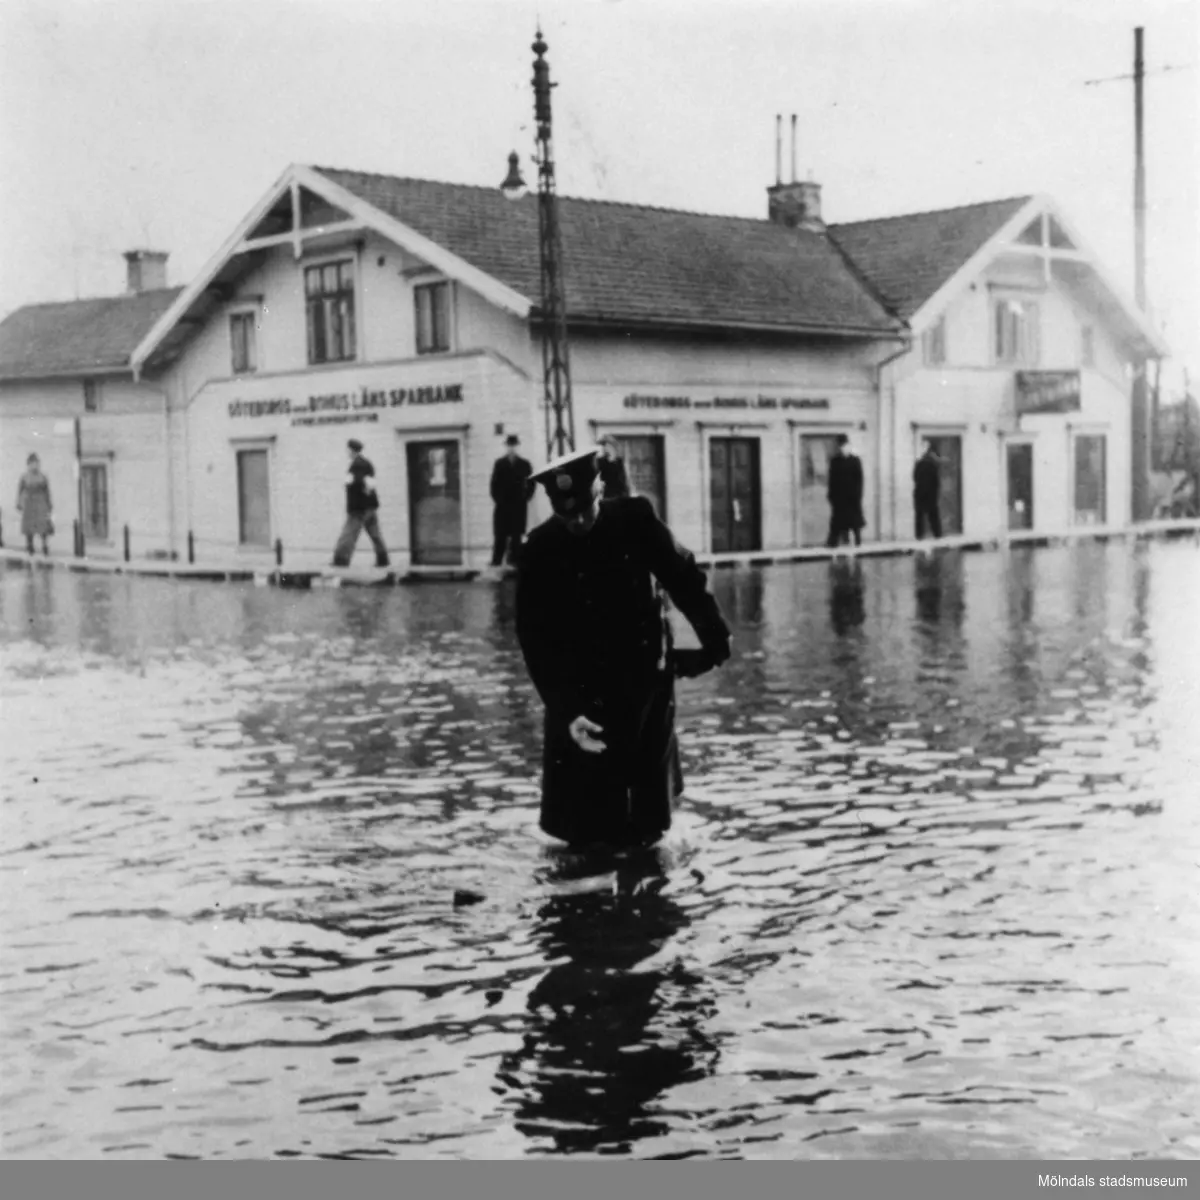 Uniformsklädd man (Polisman) under tjänstgöring vid översvämning på Göteborgsvägen i Mölndalsbro. Göteborgs- och Bohusläns sparbank syns i bakgrunden. Omkring 1920